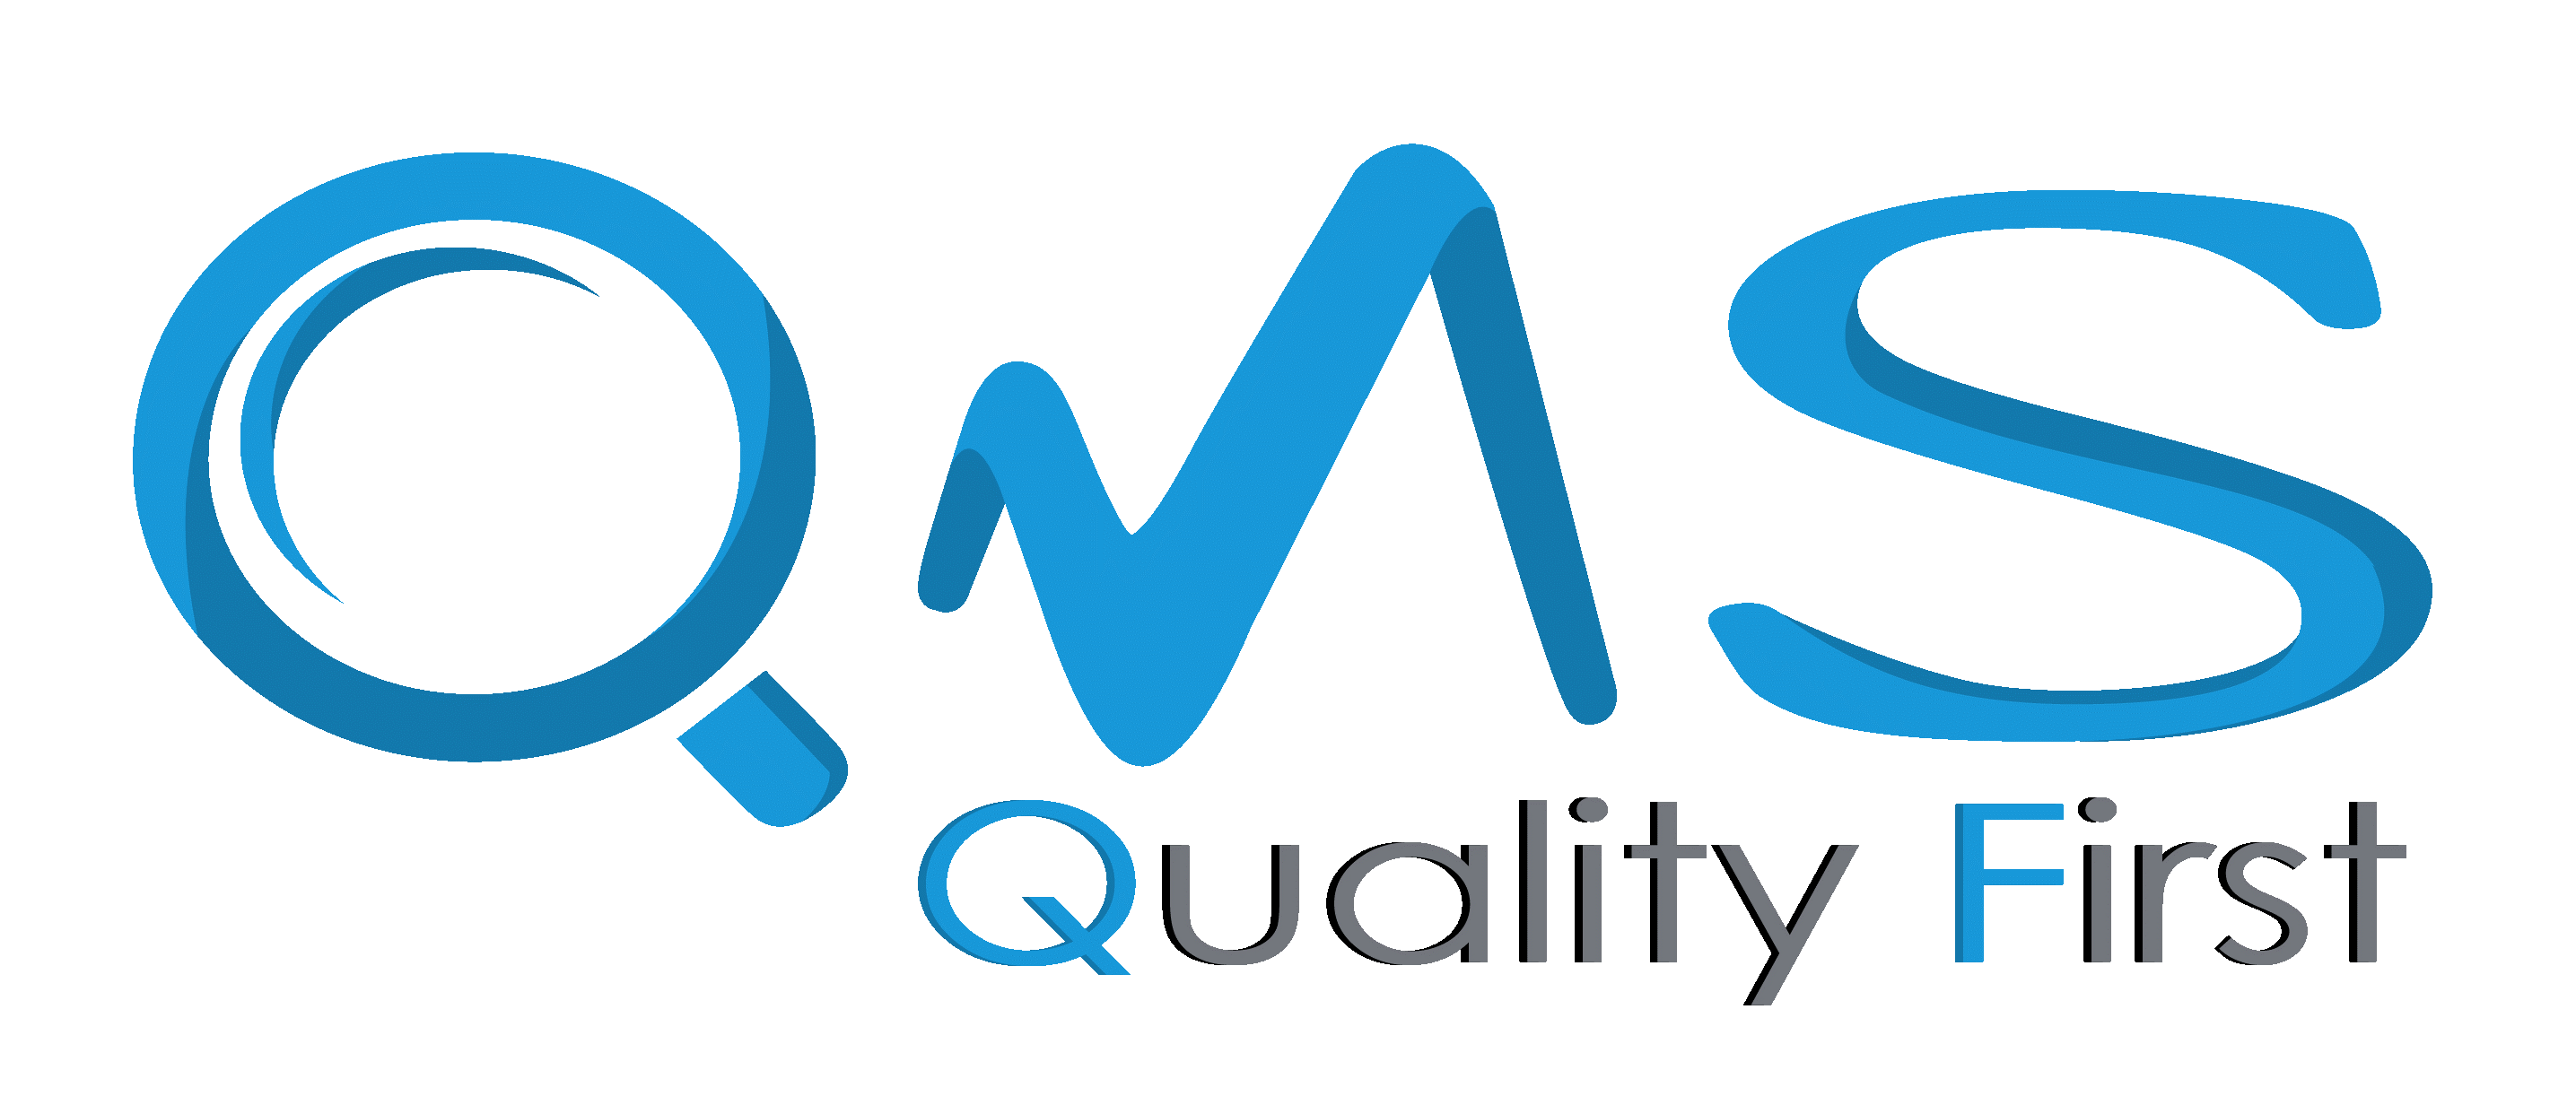 Khái niệm về hệ thống quản lý chất lượng là gì? Hệ thống quản lý chất lượng (Quality management system) là hệ thống hợp thức hóa quy trình